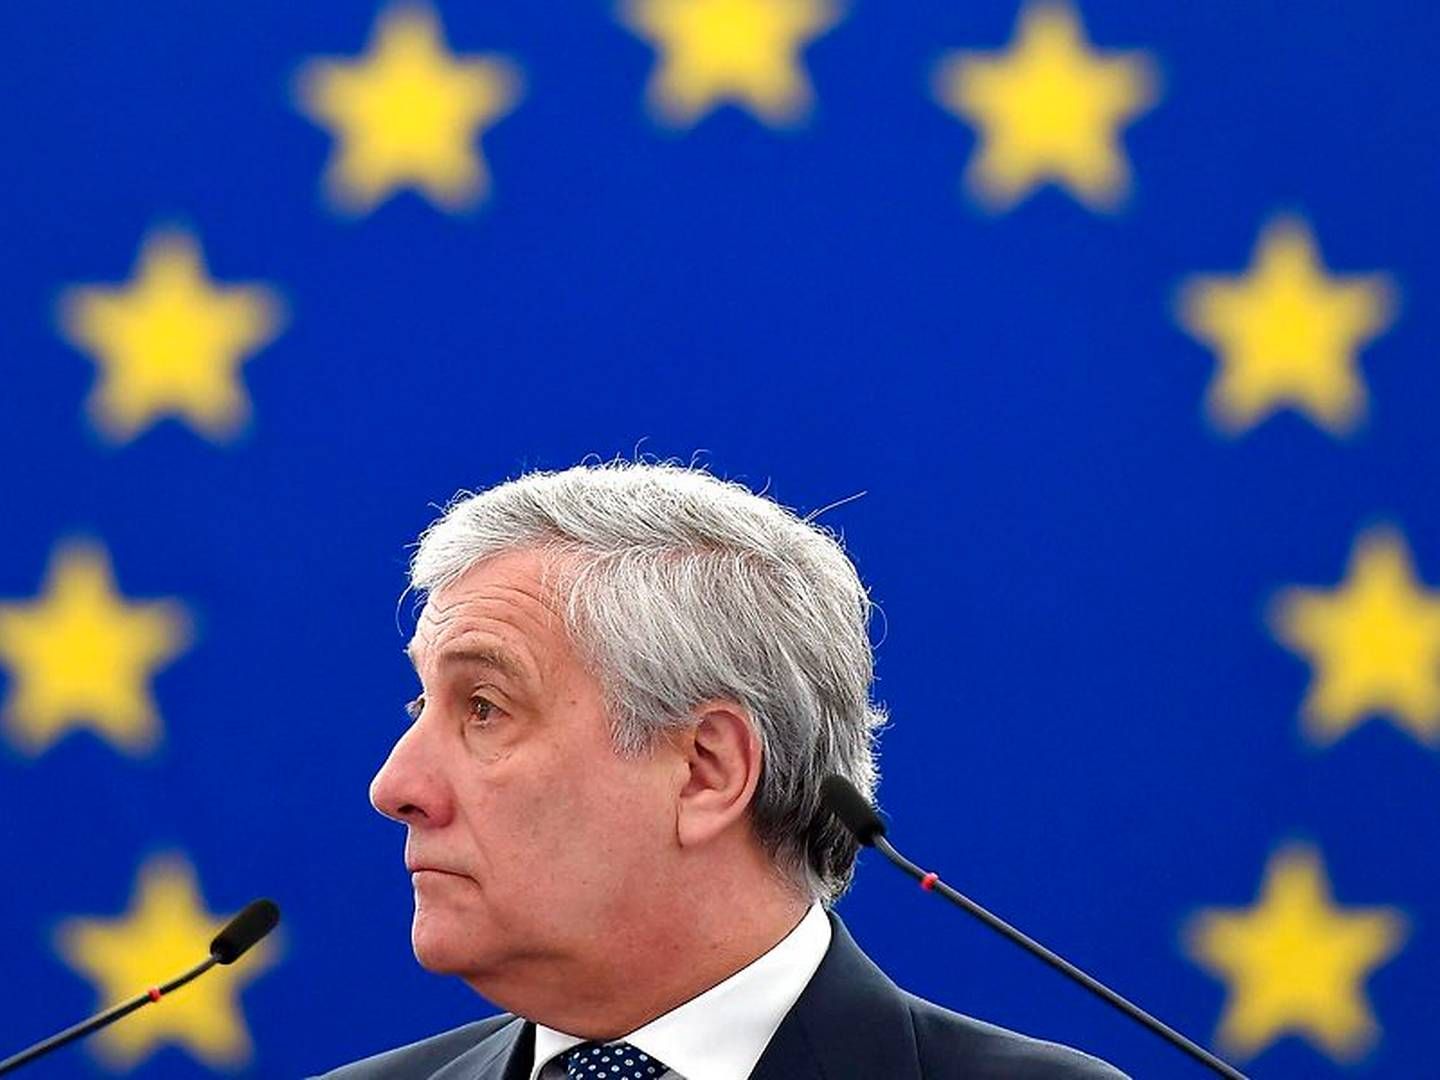 Antonio Tajani går efter at blive genvalgt som formand for Europa-Parlamentet. | Foto: Ritzau Scanpix/FREDERICK FLORIN / AFP